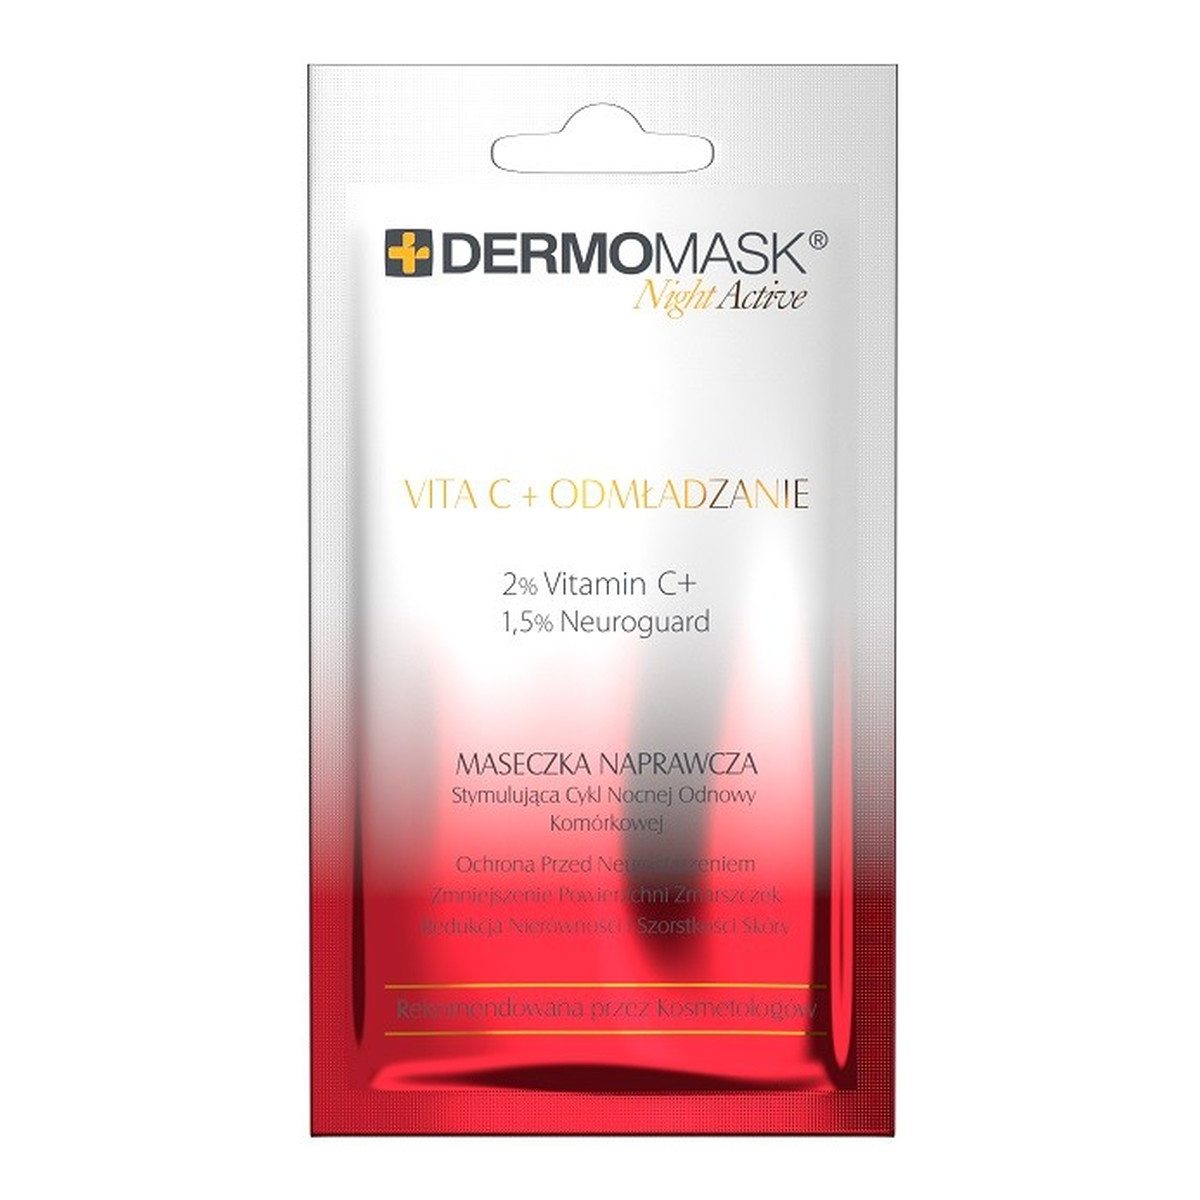 Lbiotica / Biovax Dermomask Night Active Maseczka naprawcza na twarz - Vita C + Odmładzanie 12ml